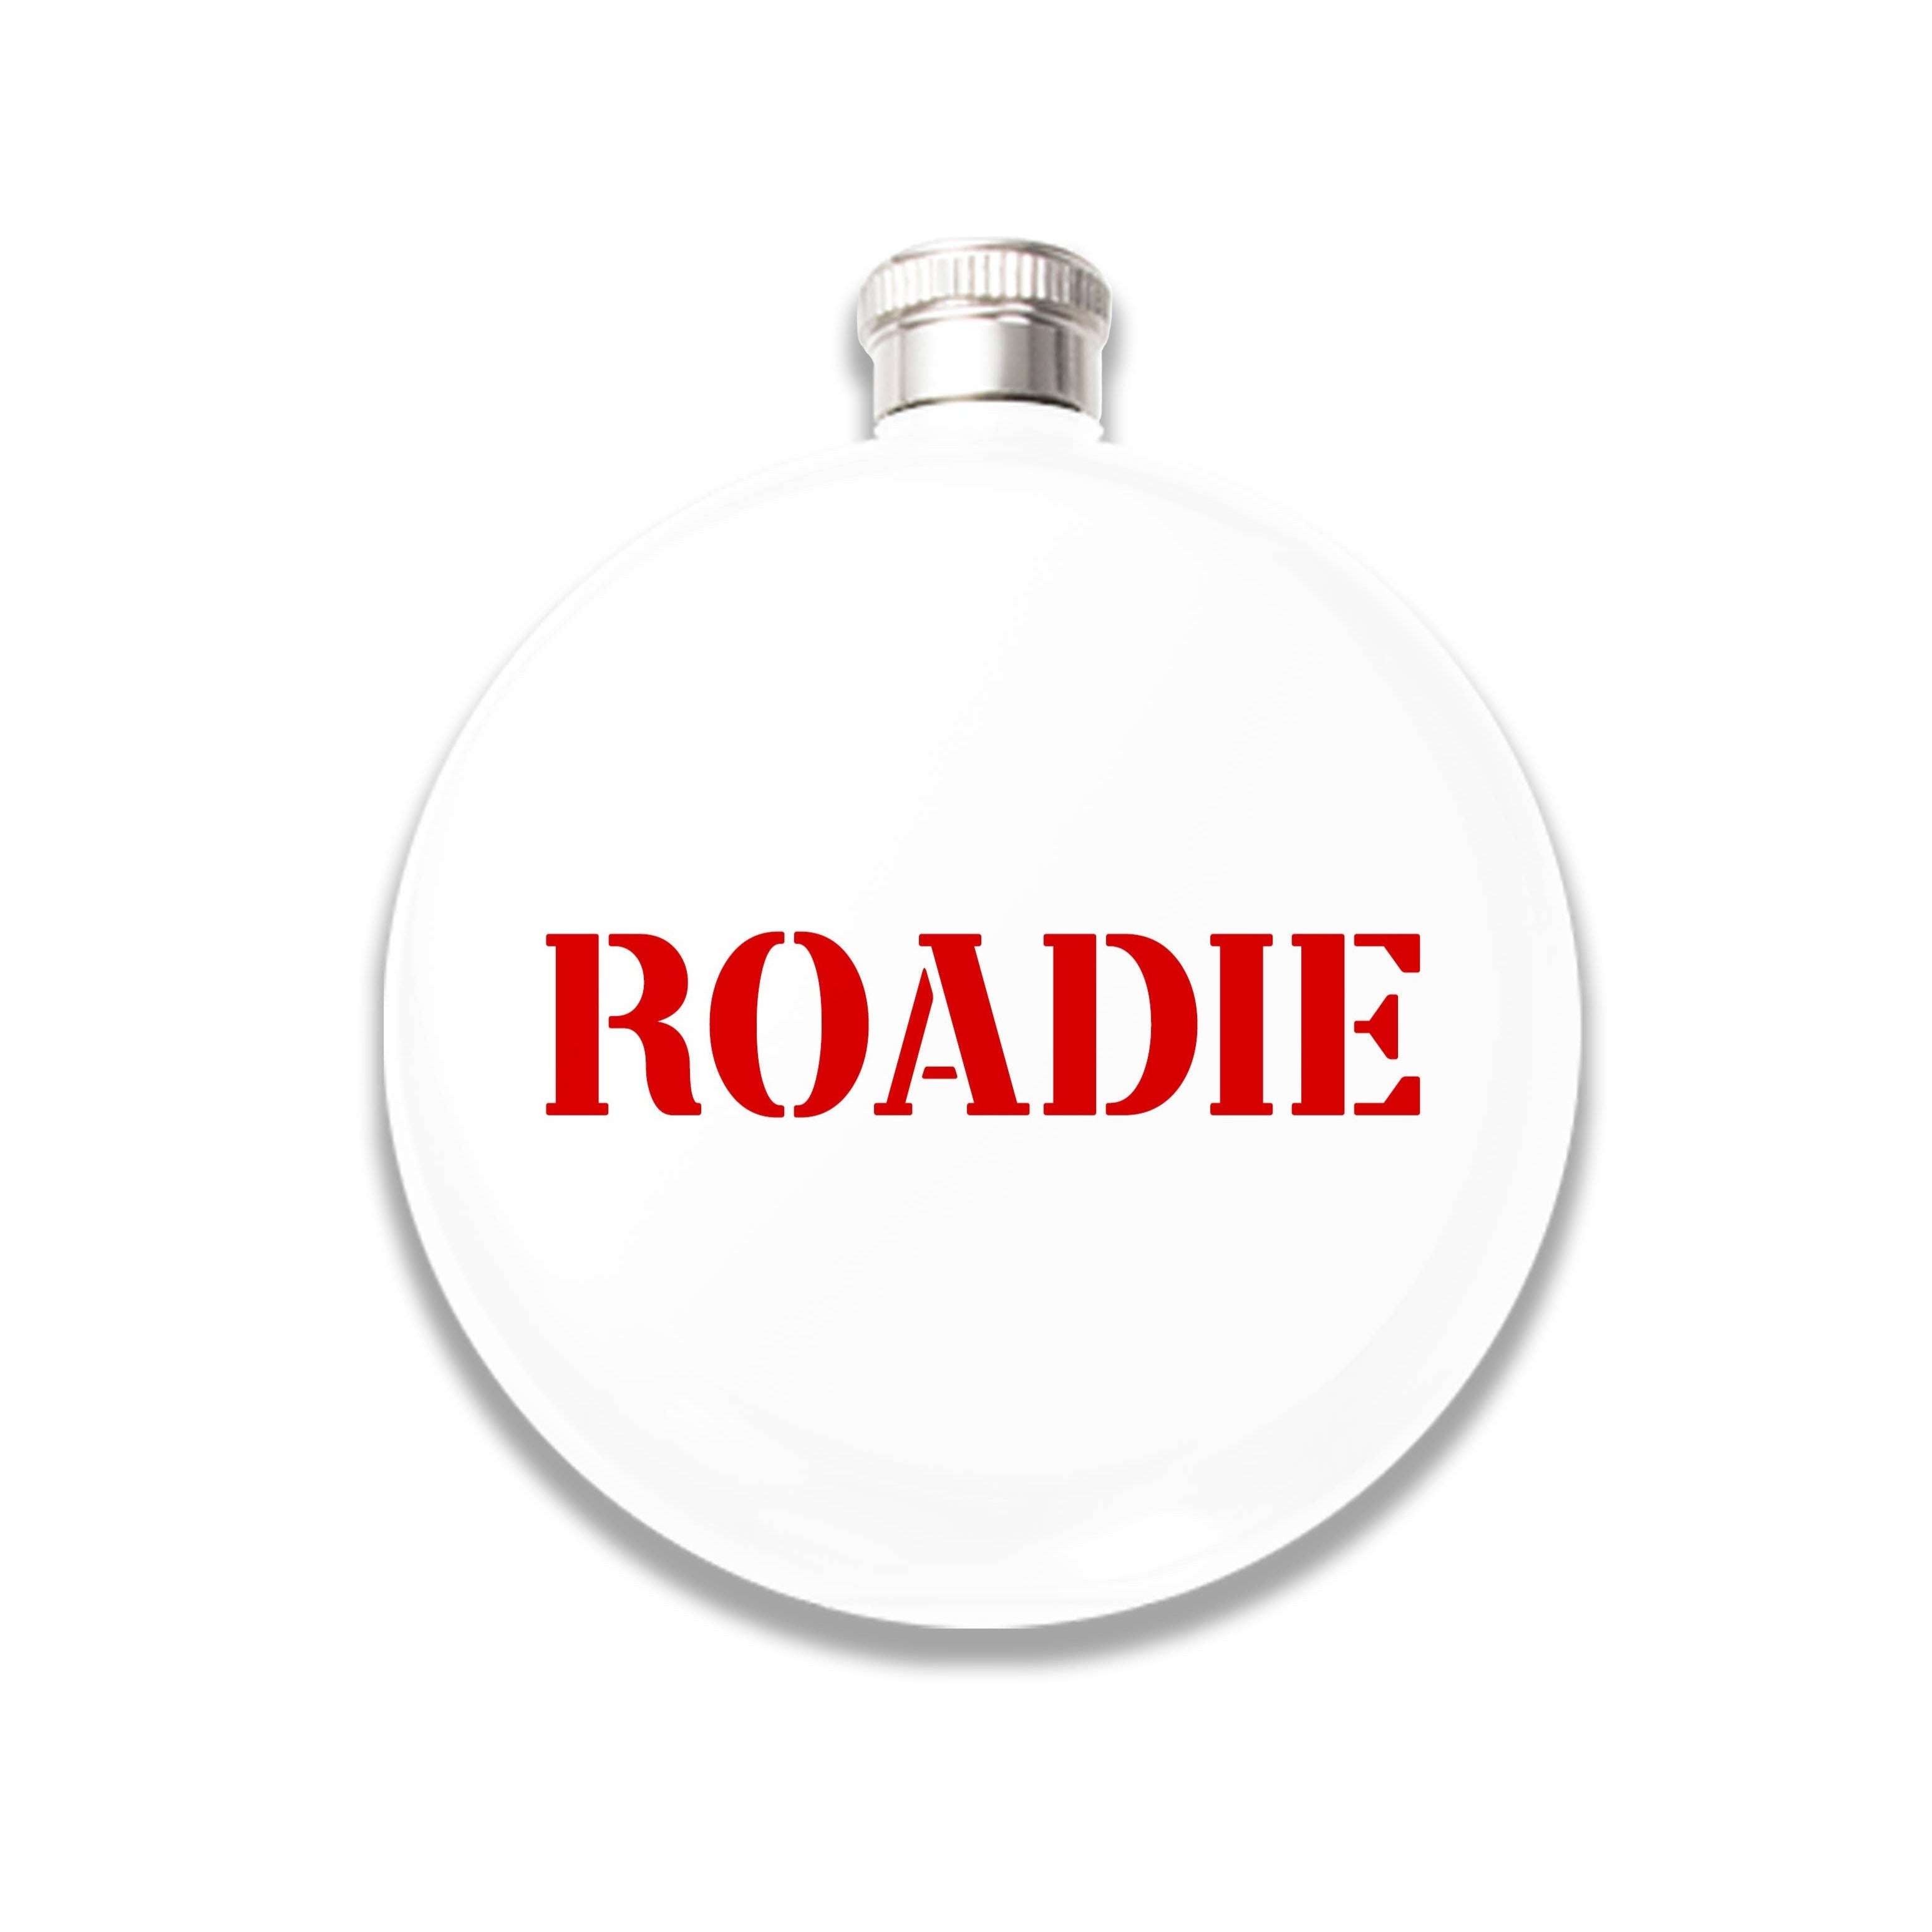 Roadie Round Flask